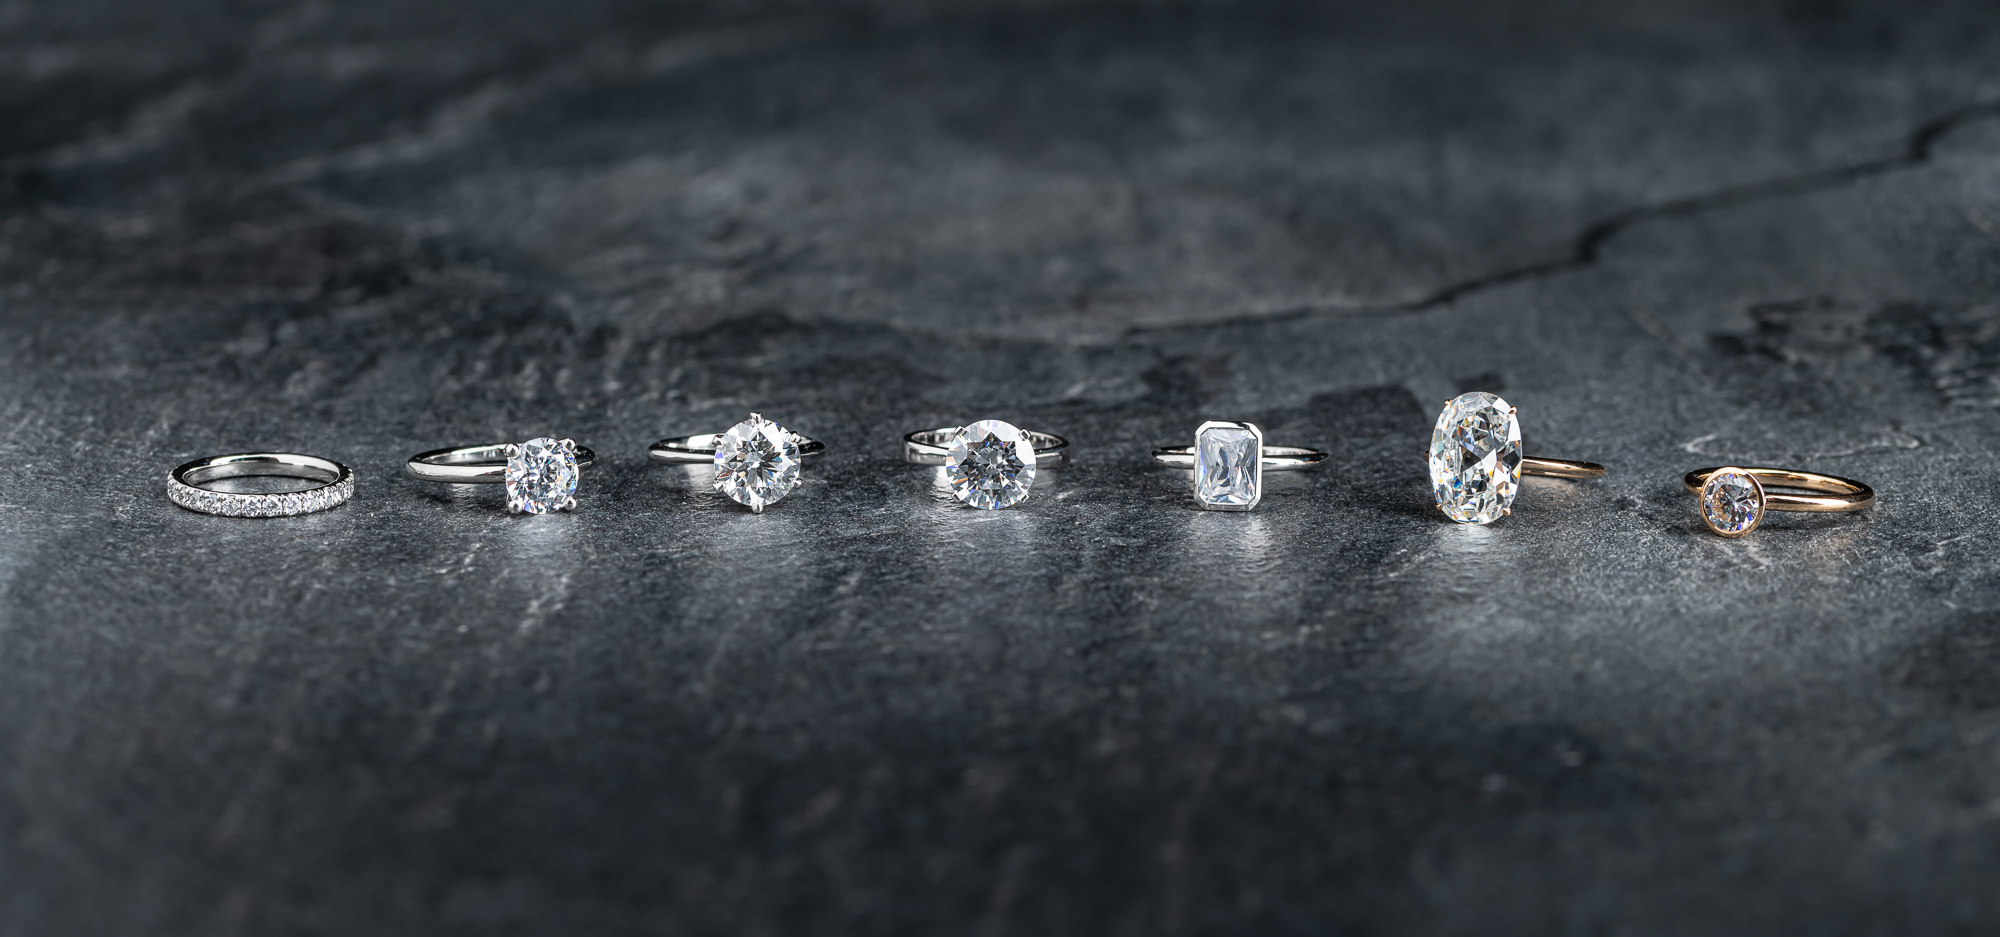 Solitär (Verlobungsring, Engagement Ring, Solitaire) und Eternity Ring. Labor Diamanten, Lab Grown Diamonds. Green World Diamonds.